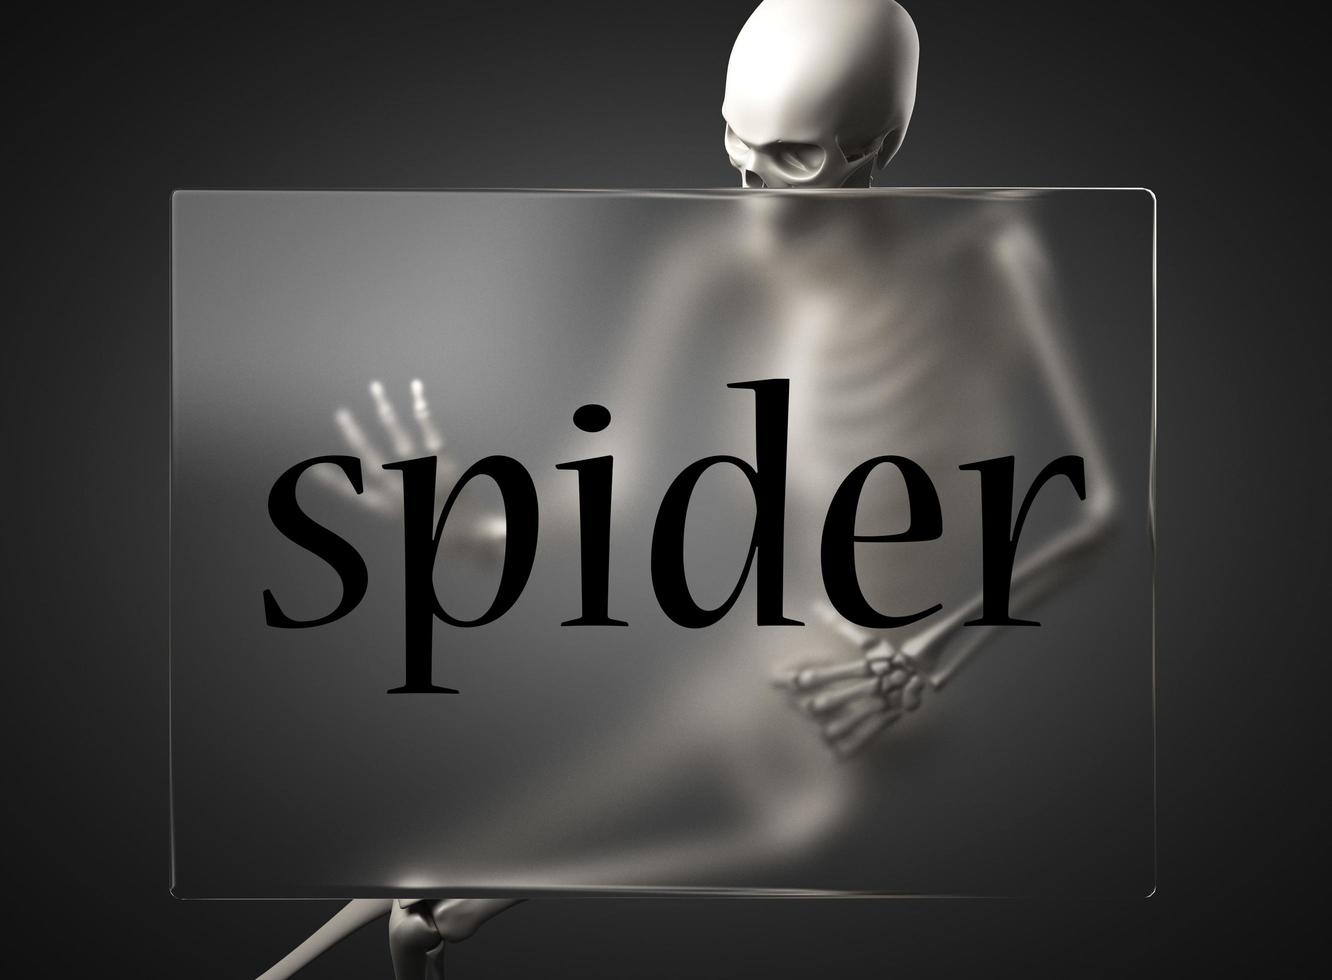 palavra aranha em vidro e esqueleto foto